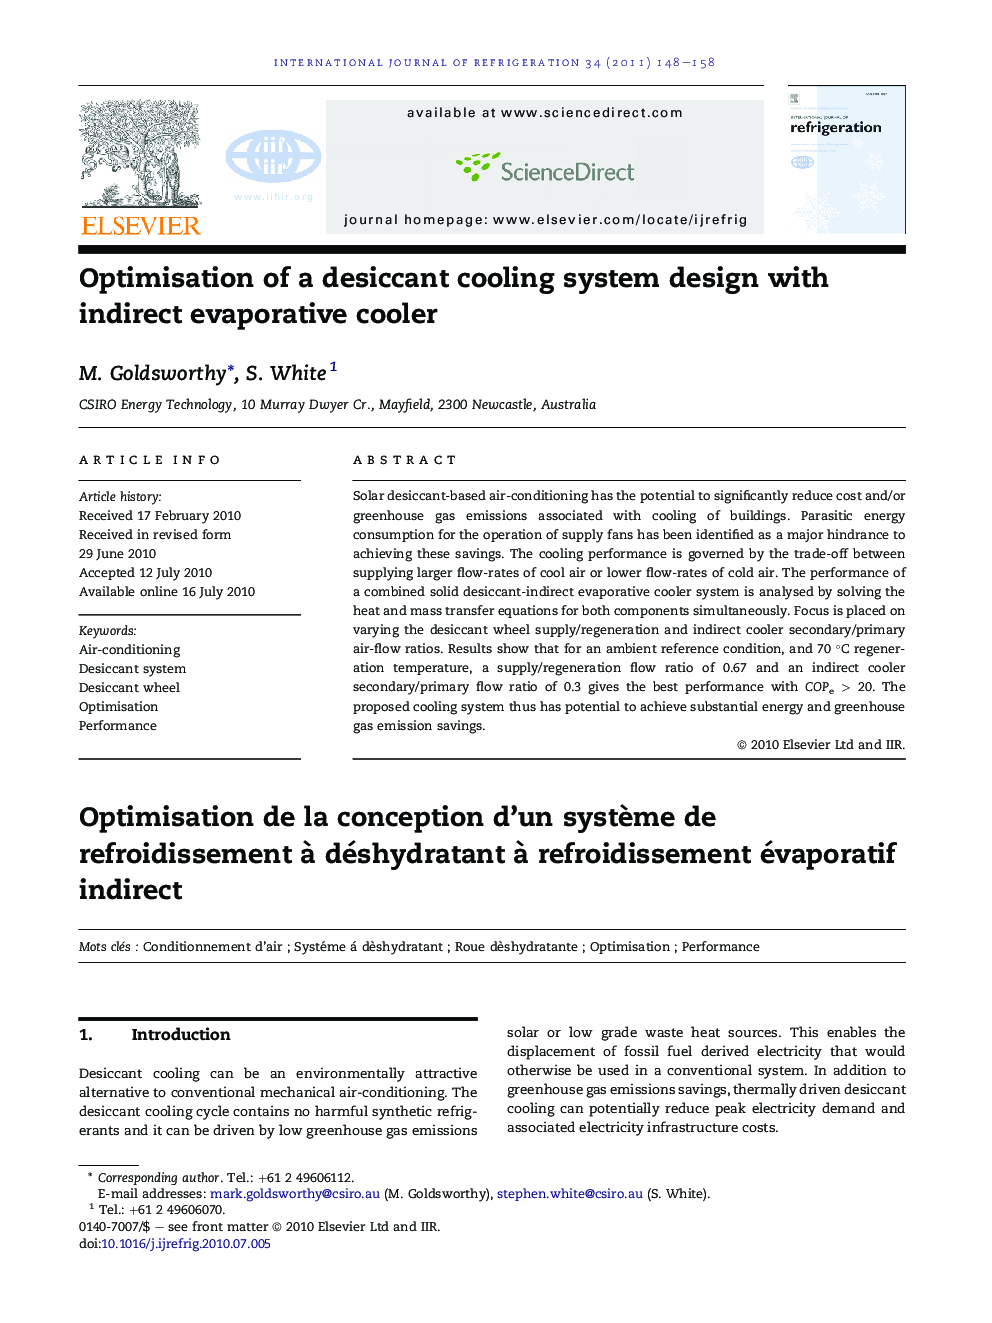 Optimisation of a desiccant cooling system design with indirect evaporative cooler